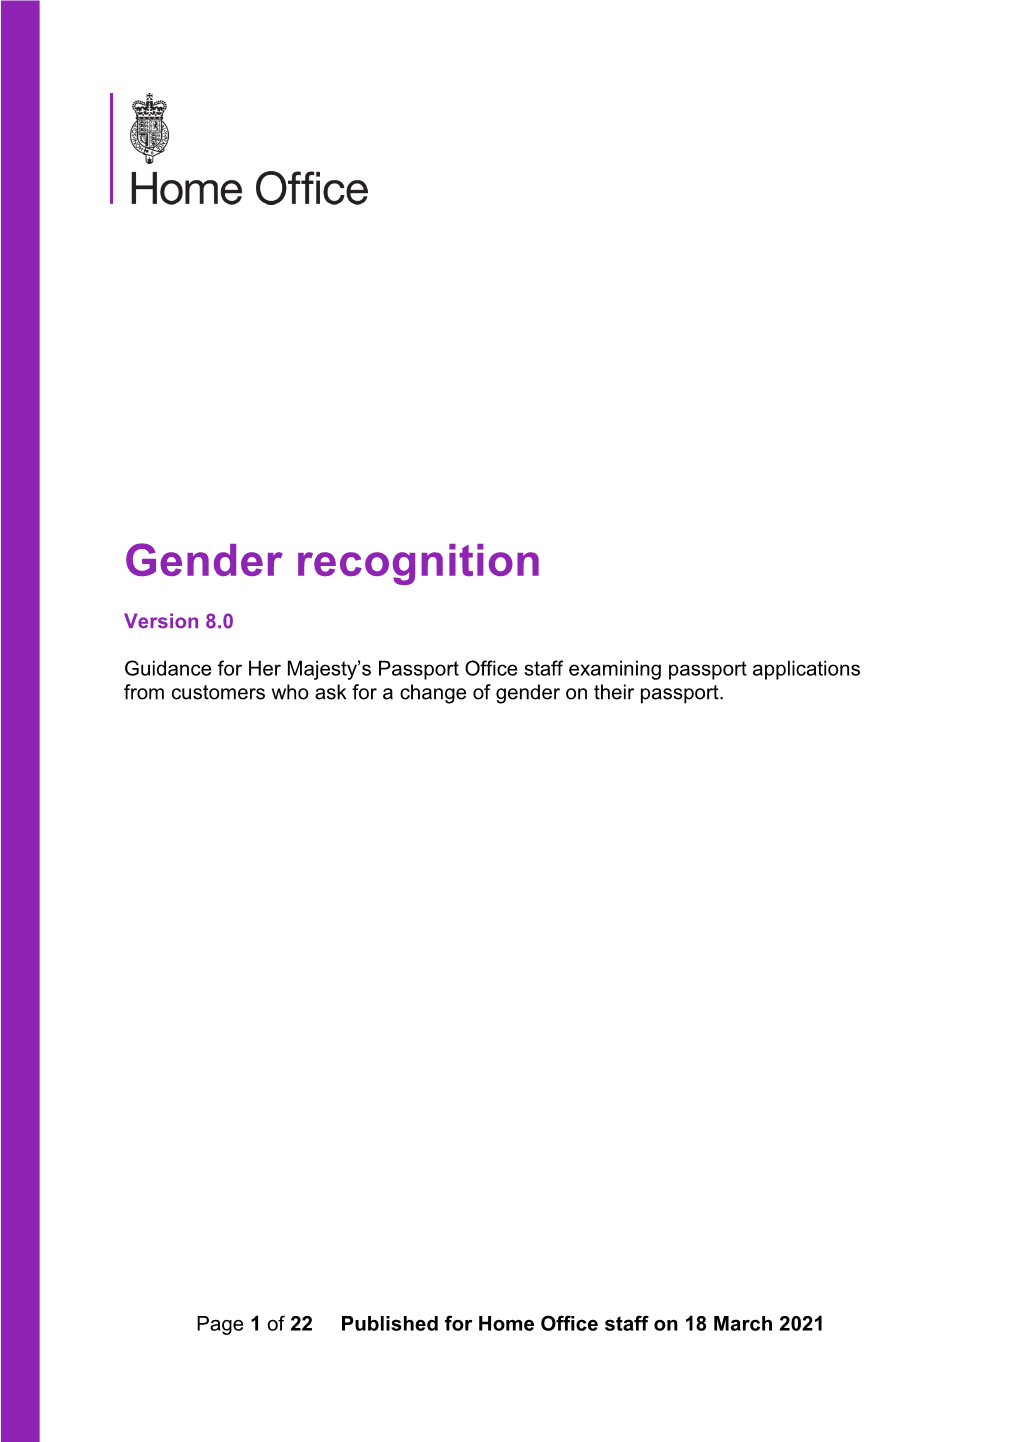 Gender Recognition